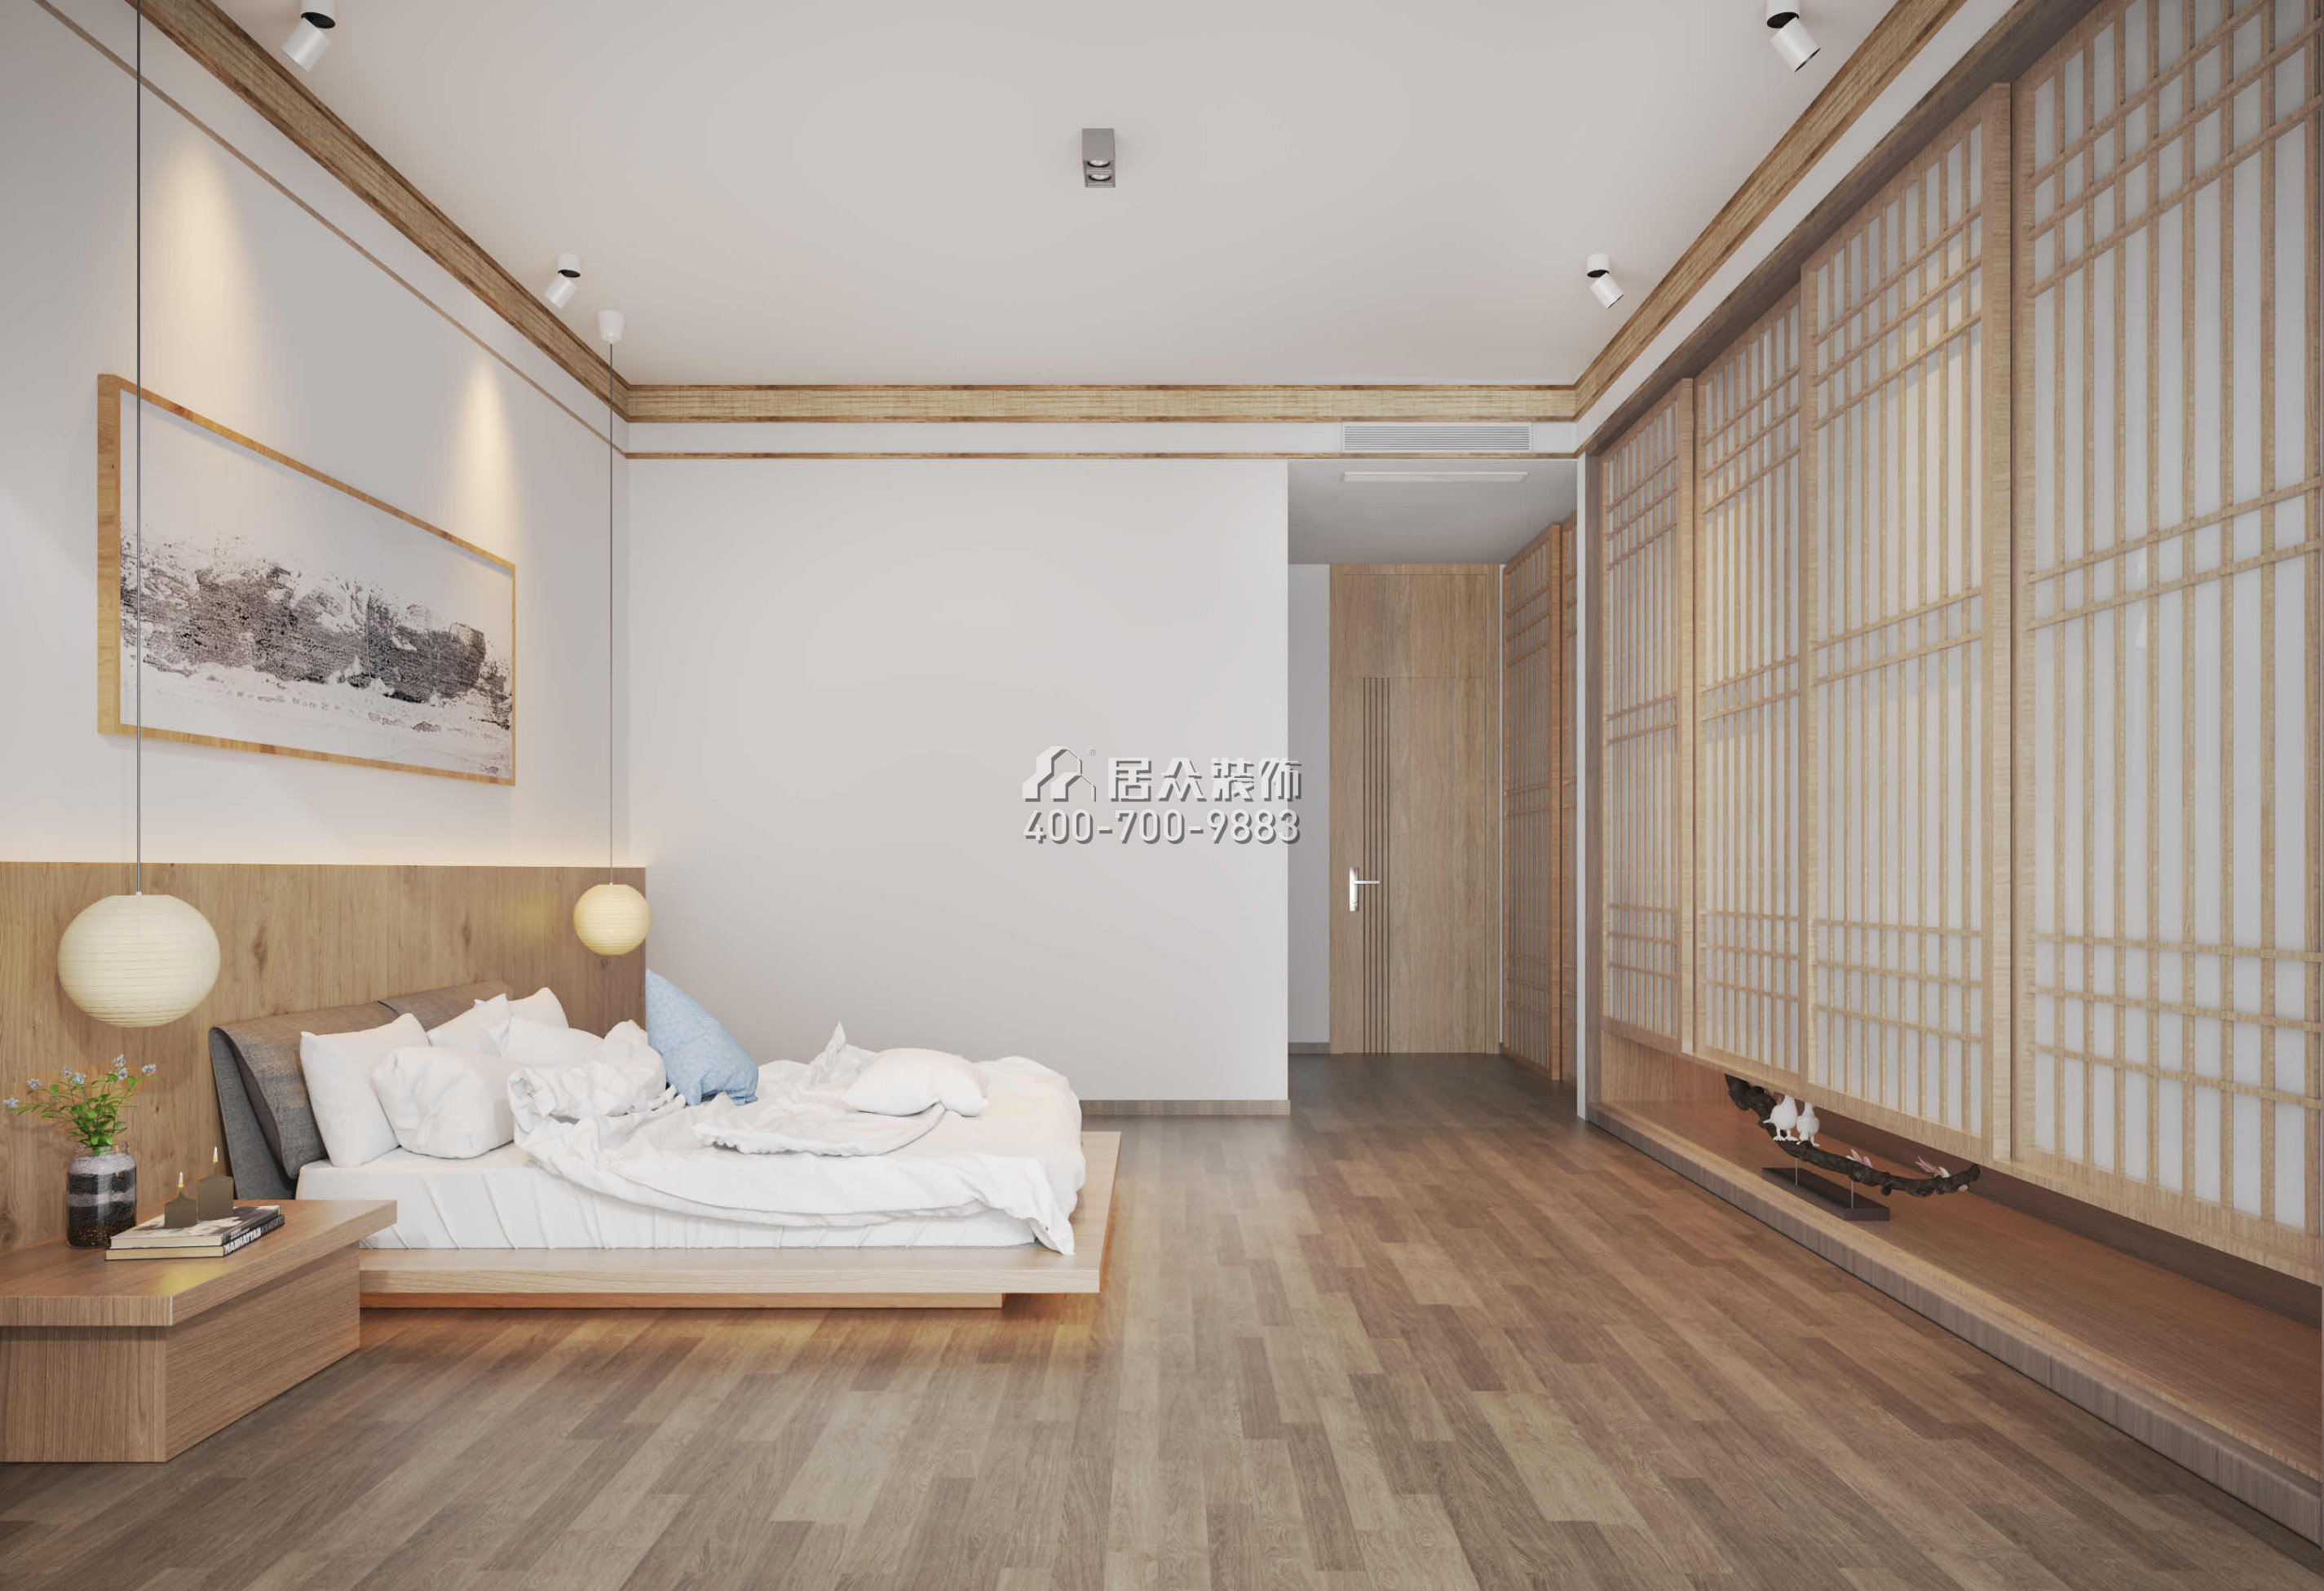 九洲保利天河620平方米中式風格別墅戶型臥室裝修效果圖